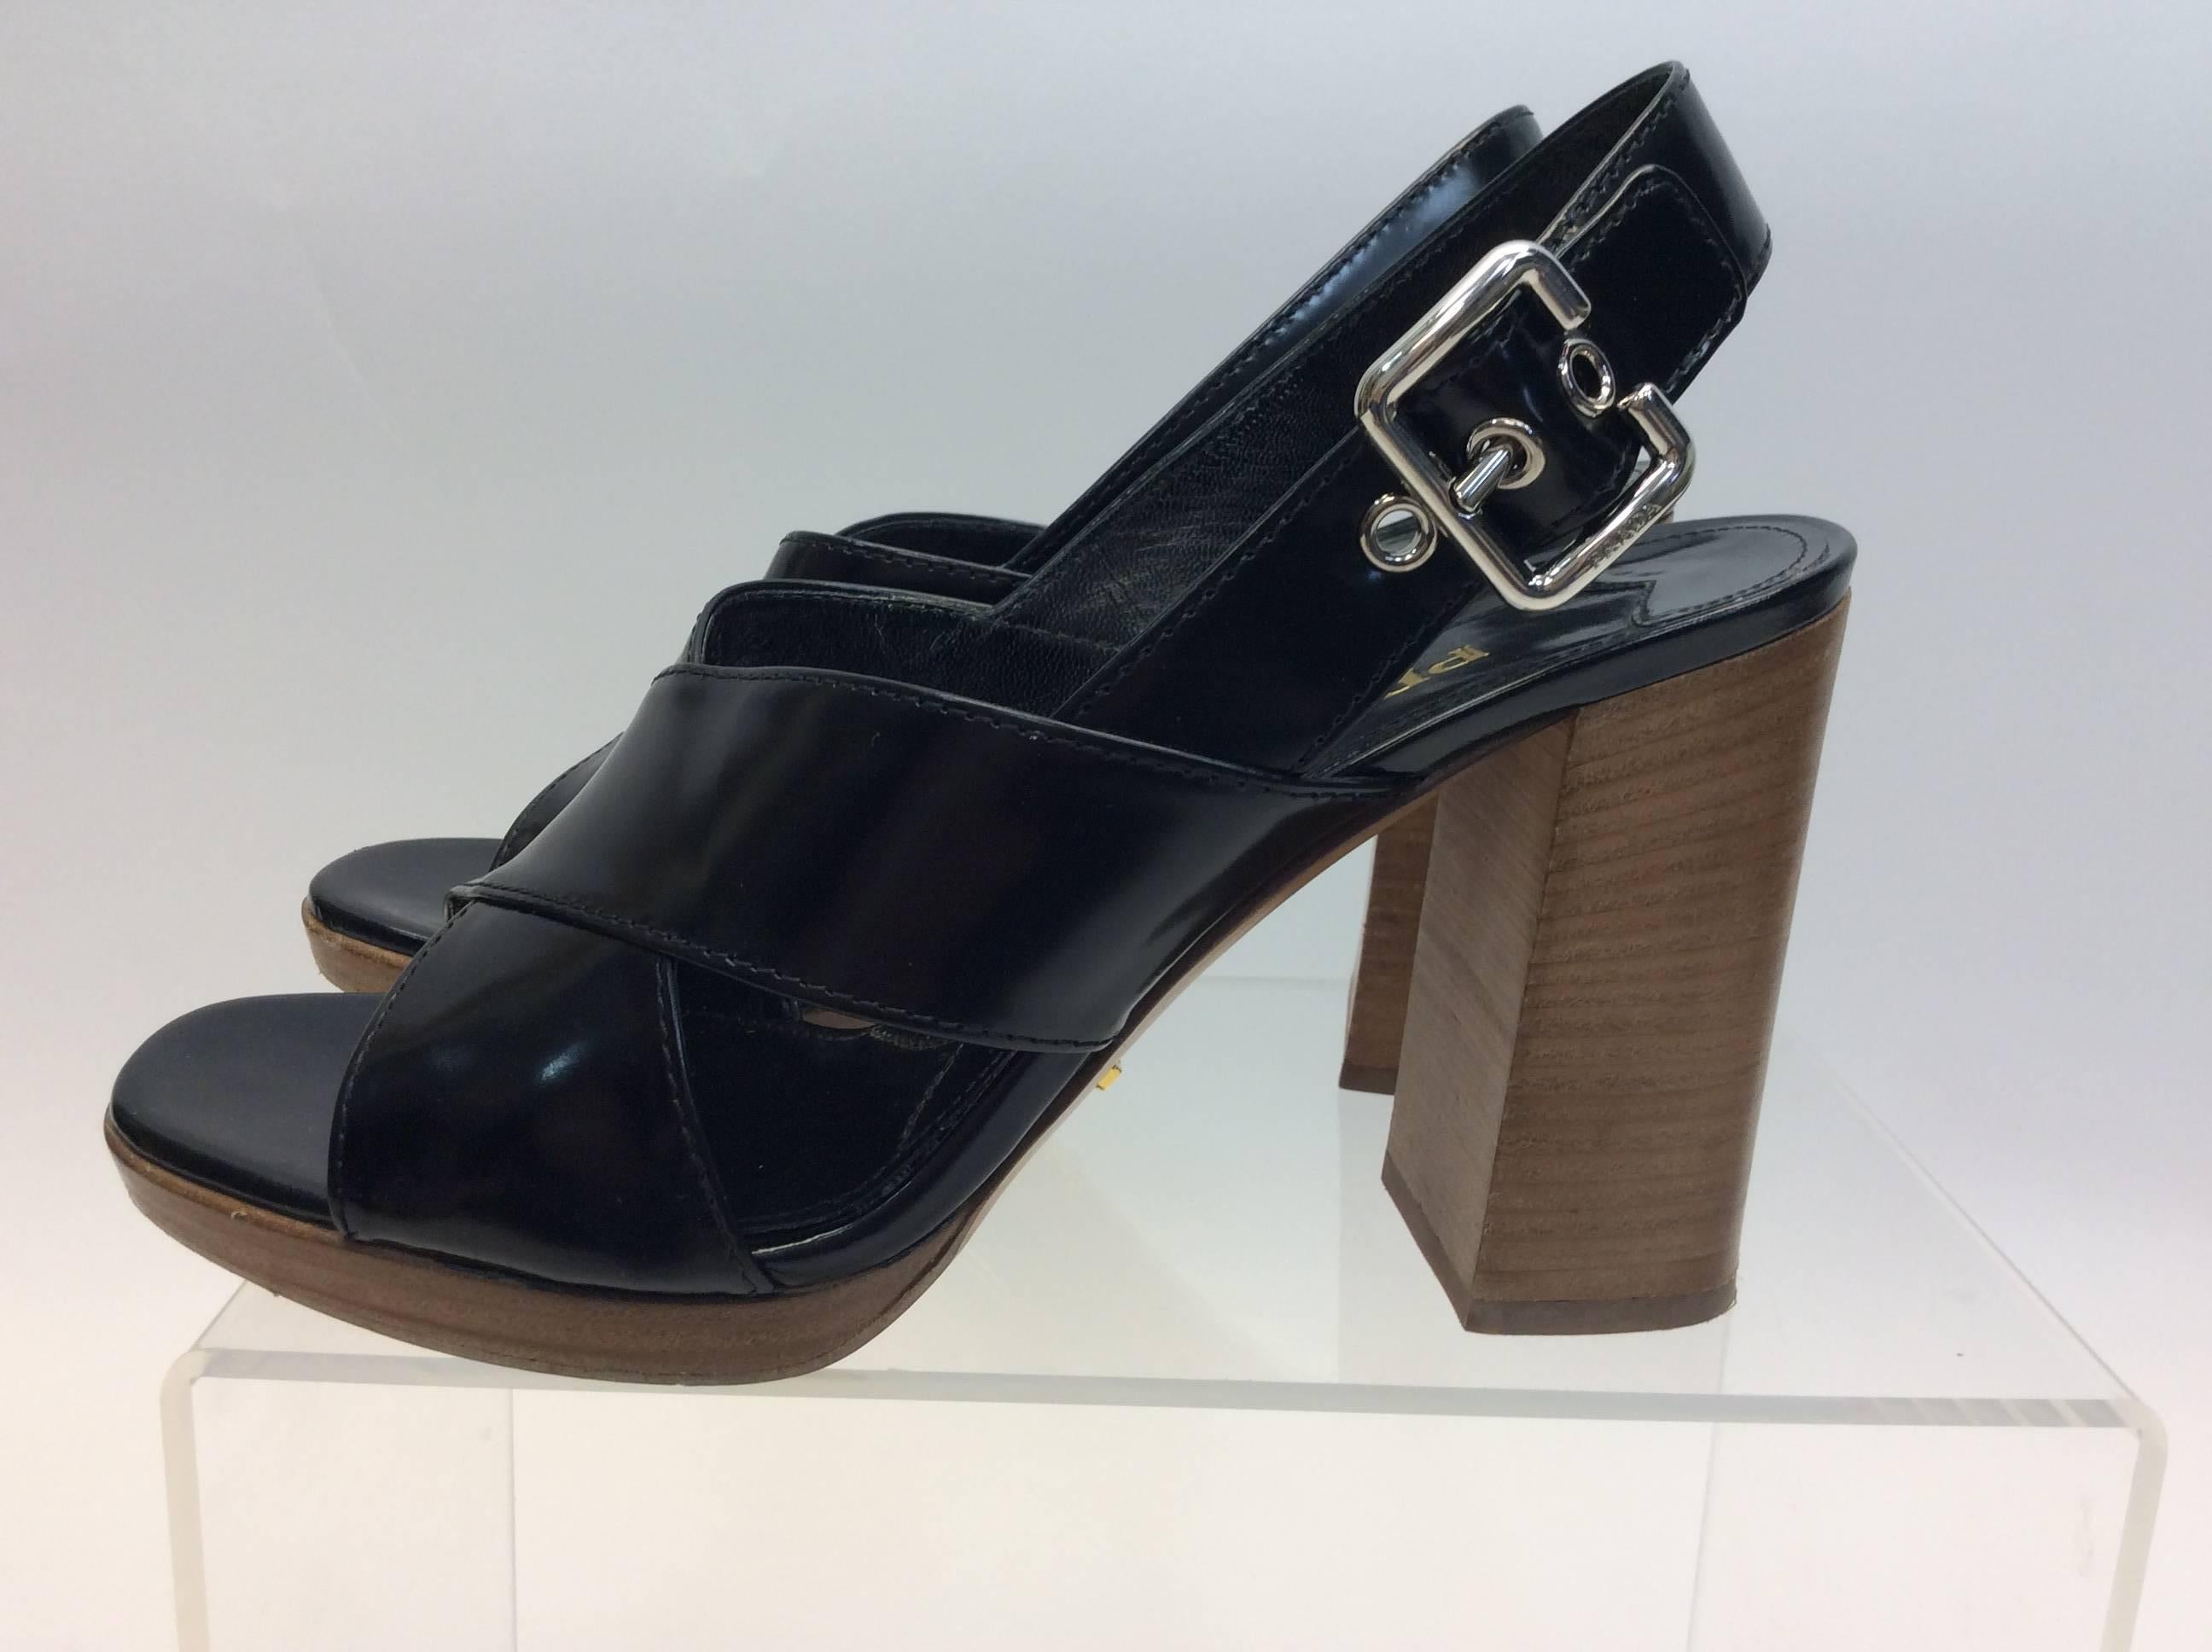 Prada Black Leather Heeled Sandal
$289
4